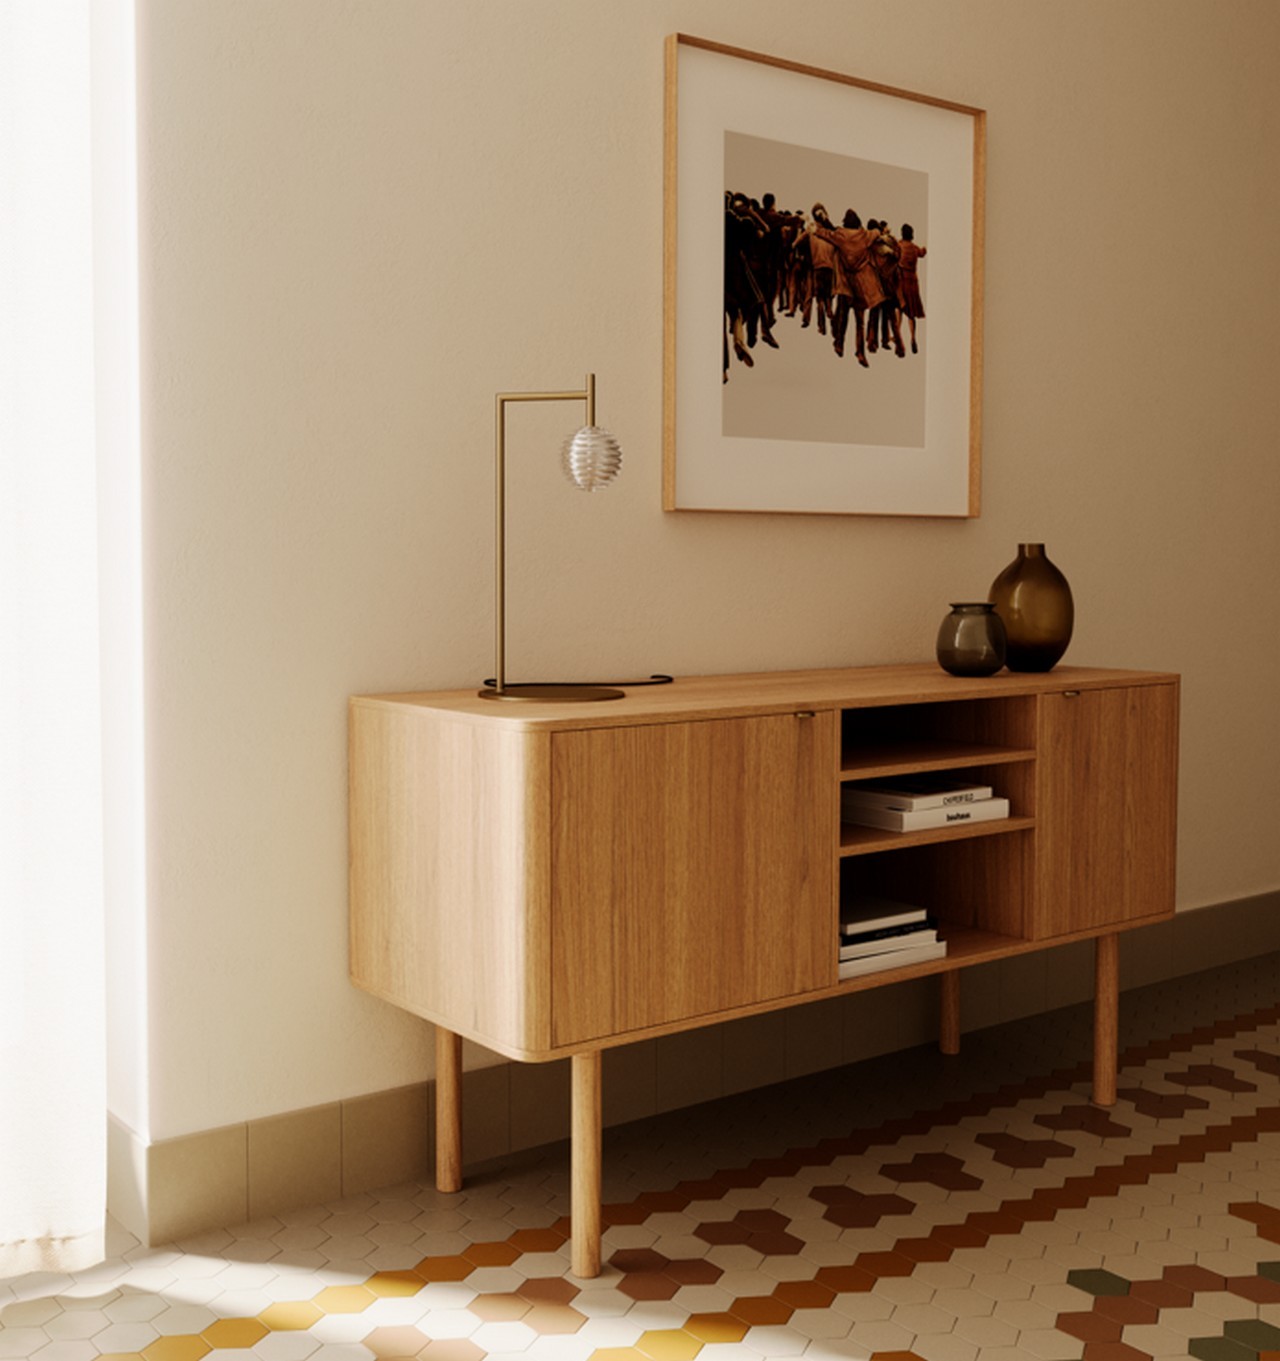 Adicione um toque moderno e aconchegante a qualquer canto da sua casa! O candeeiro de mesa Doul é ideal para criar ambientes acolhedores e únicos.